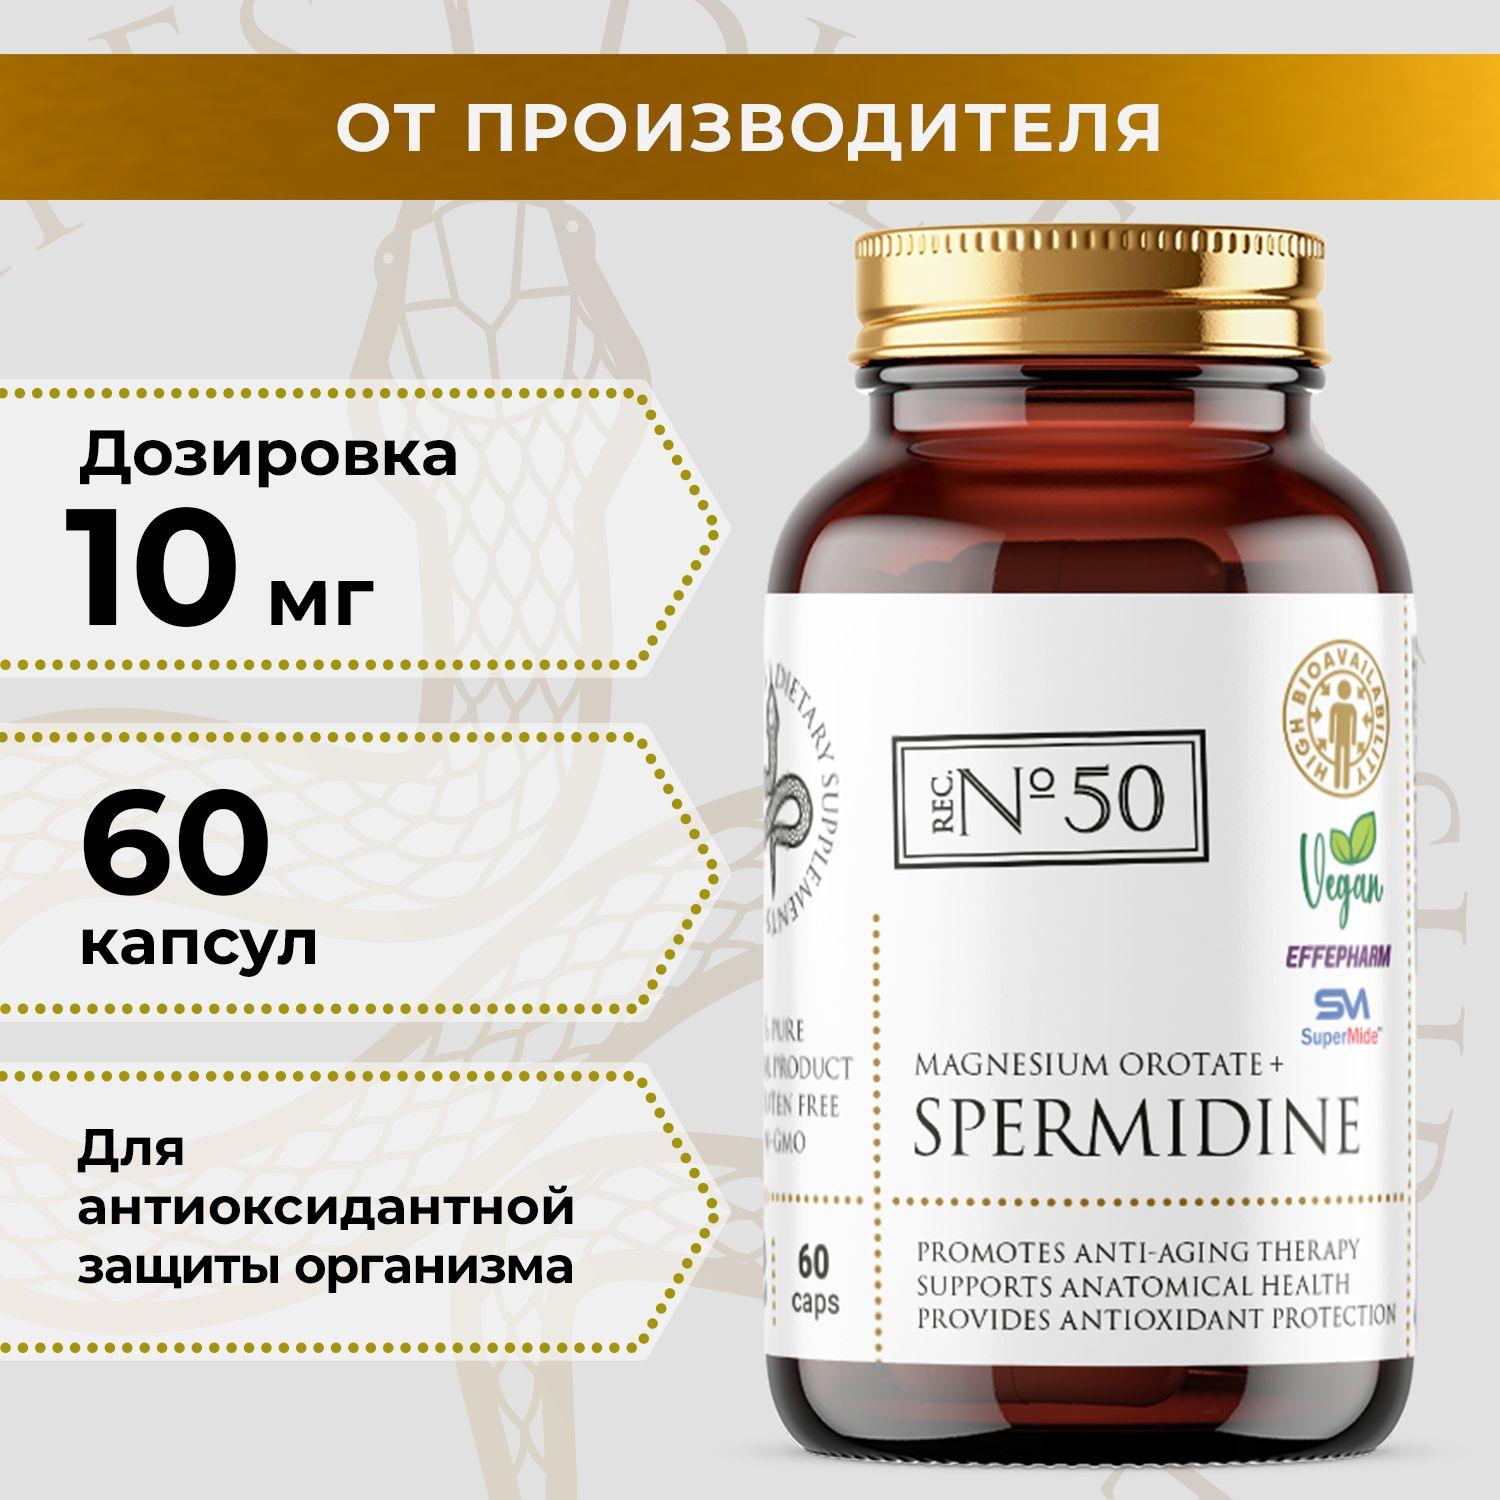 Спермидин (Spermidine) 10 мг и Магний Оротат 10 мг SuperMide, Effepharm, замедление старения, антиоксидант и ноотропный эффект, аутофагия, здоровый метаболизм и сердце, улучшение либидо, 60 капсул